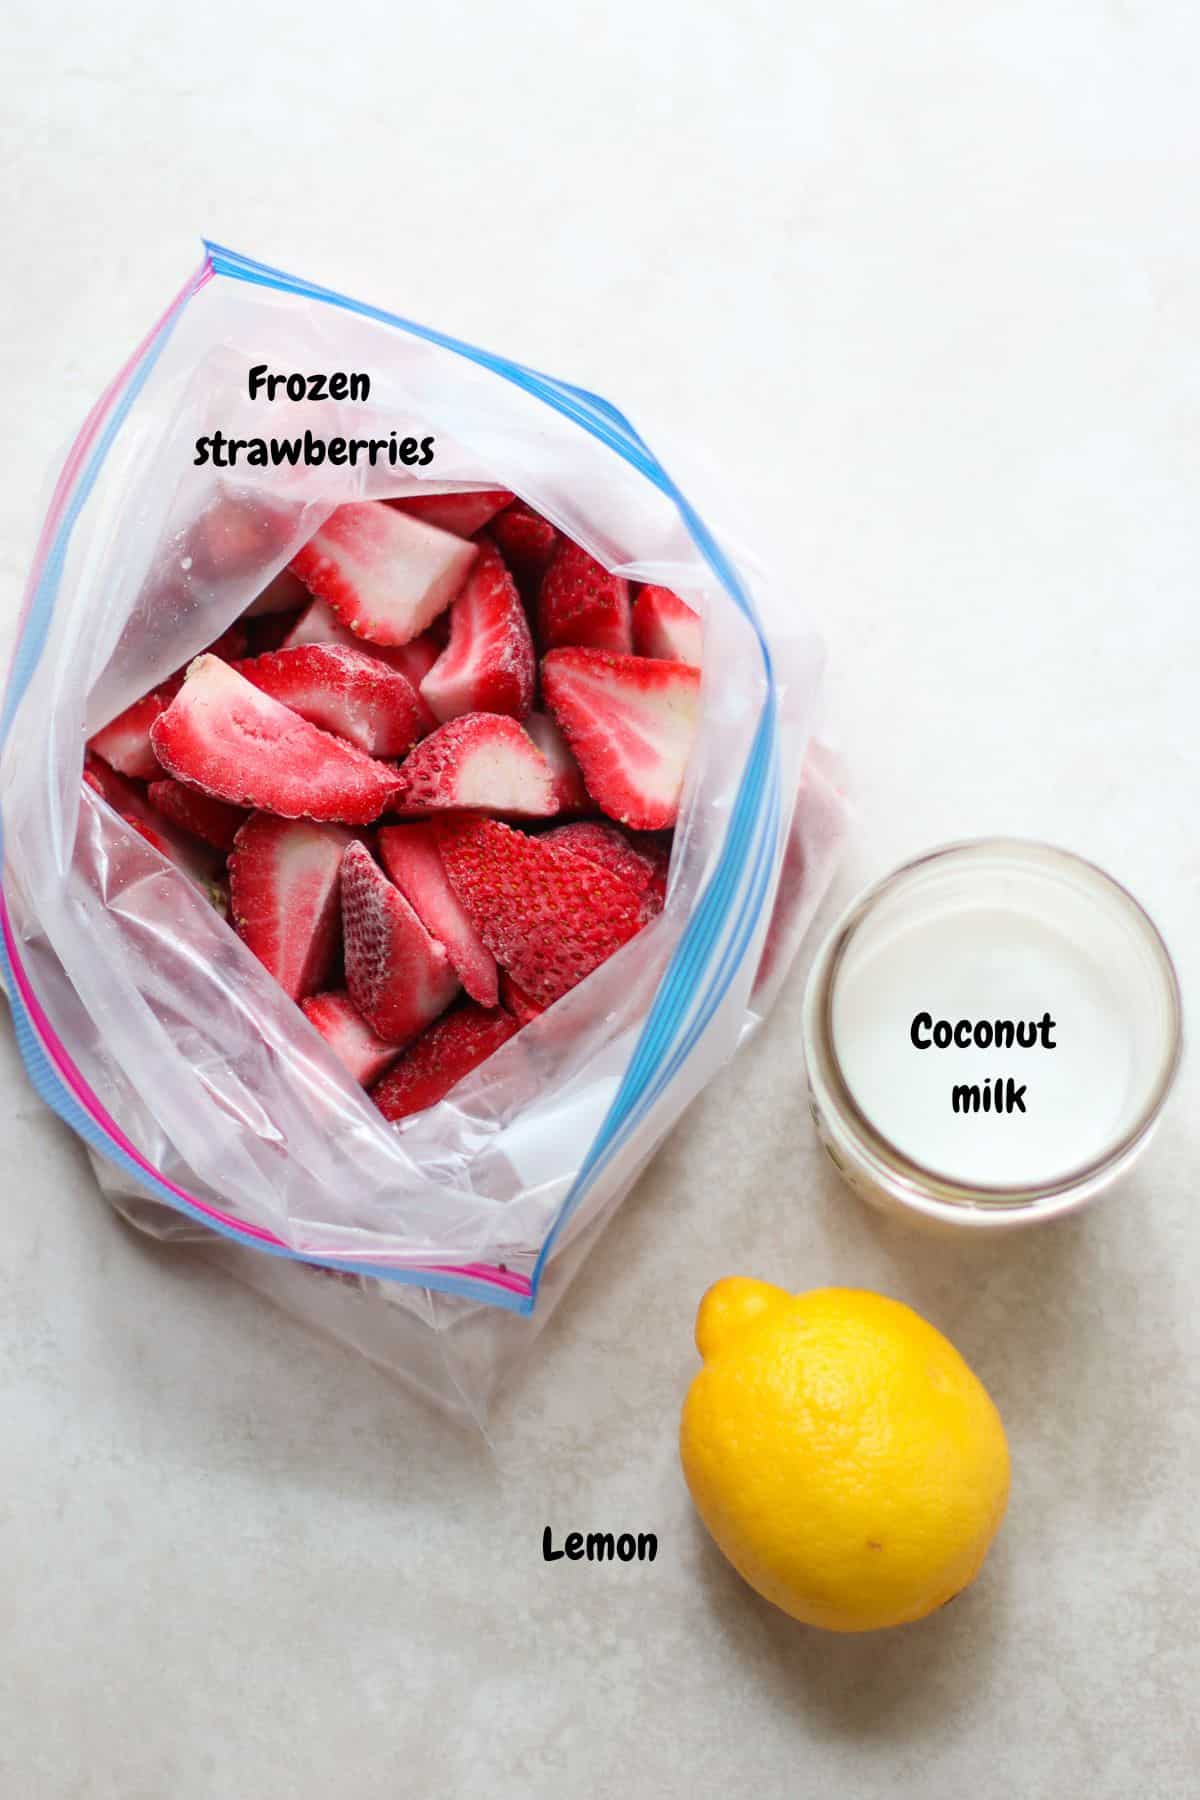 Frozen strawberries, coconut milk, and lemon.